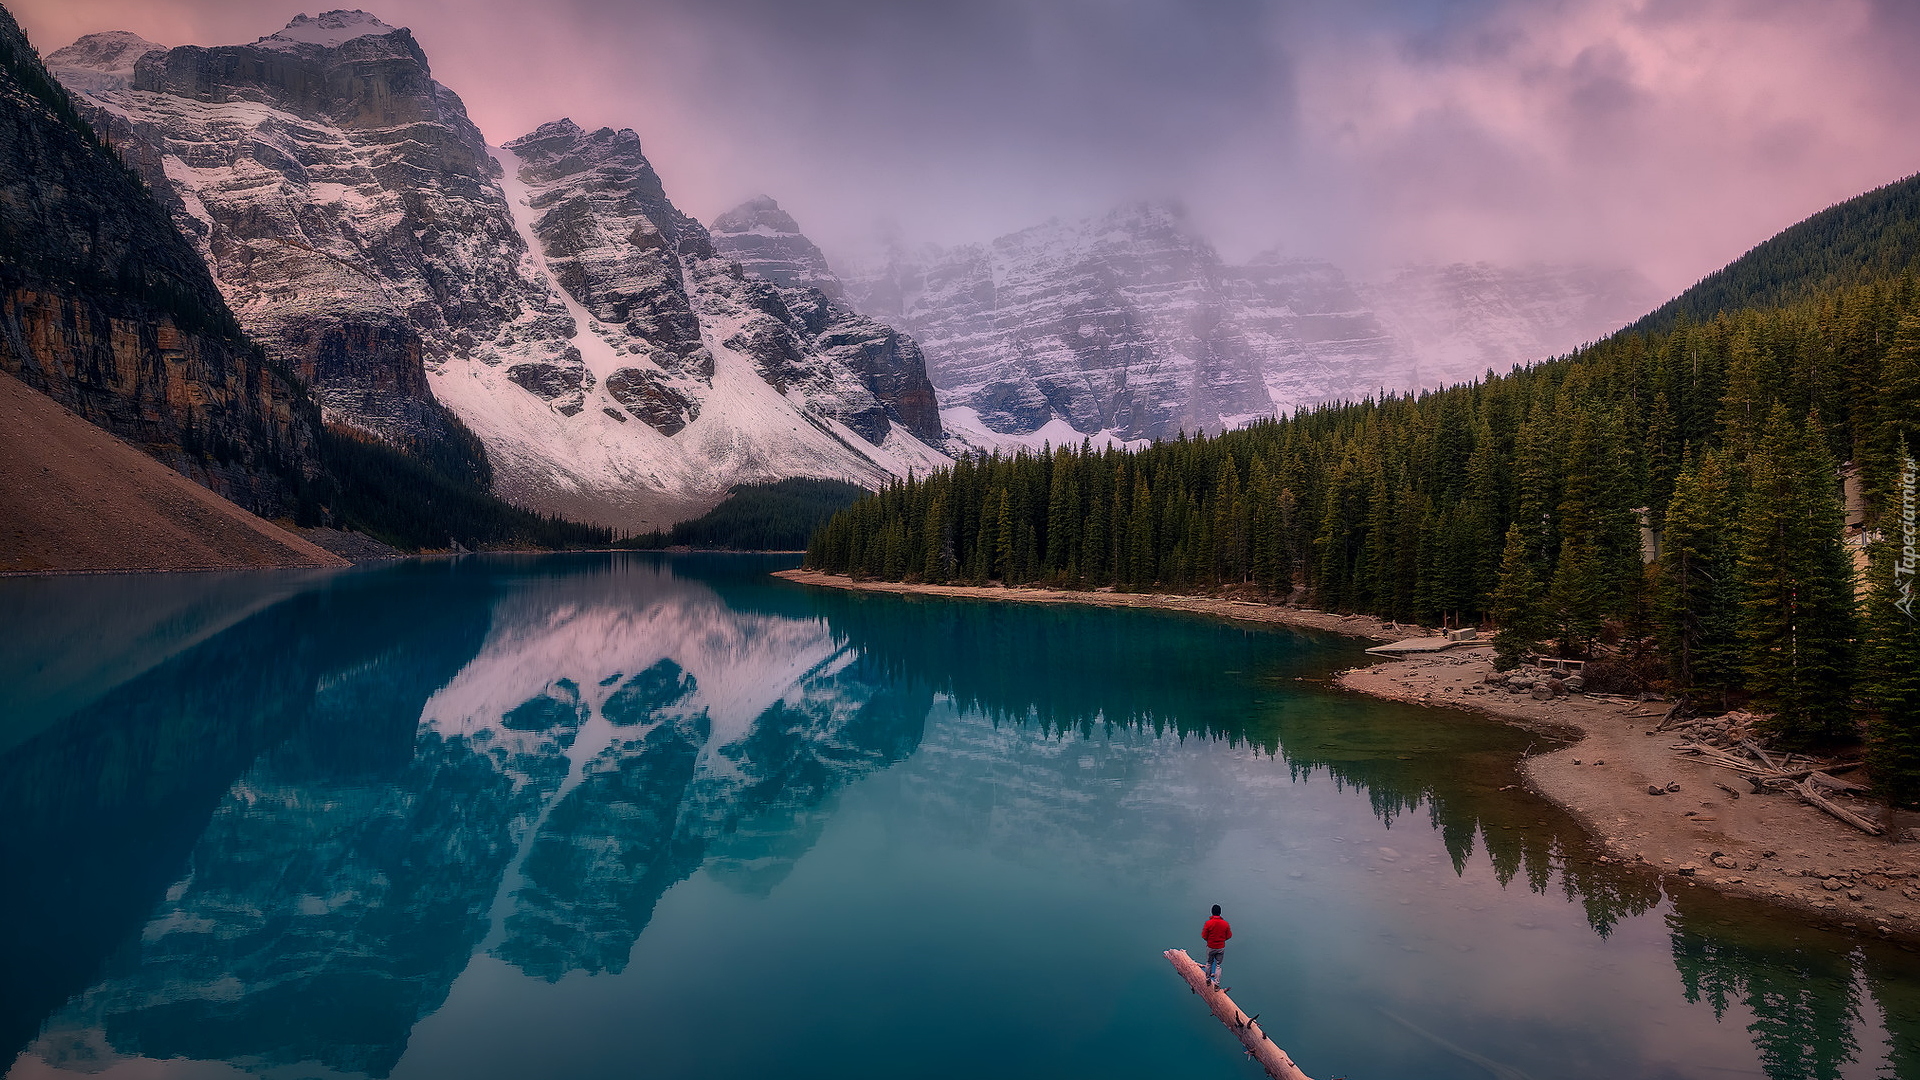 Park Narodowy Banff, Jezioro, Moraine lake, Dolina Dziesięciu Szczytów, Góry, Canadian Rockies, Drzewa, Konar, Człowiek, Alberta, Kanada